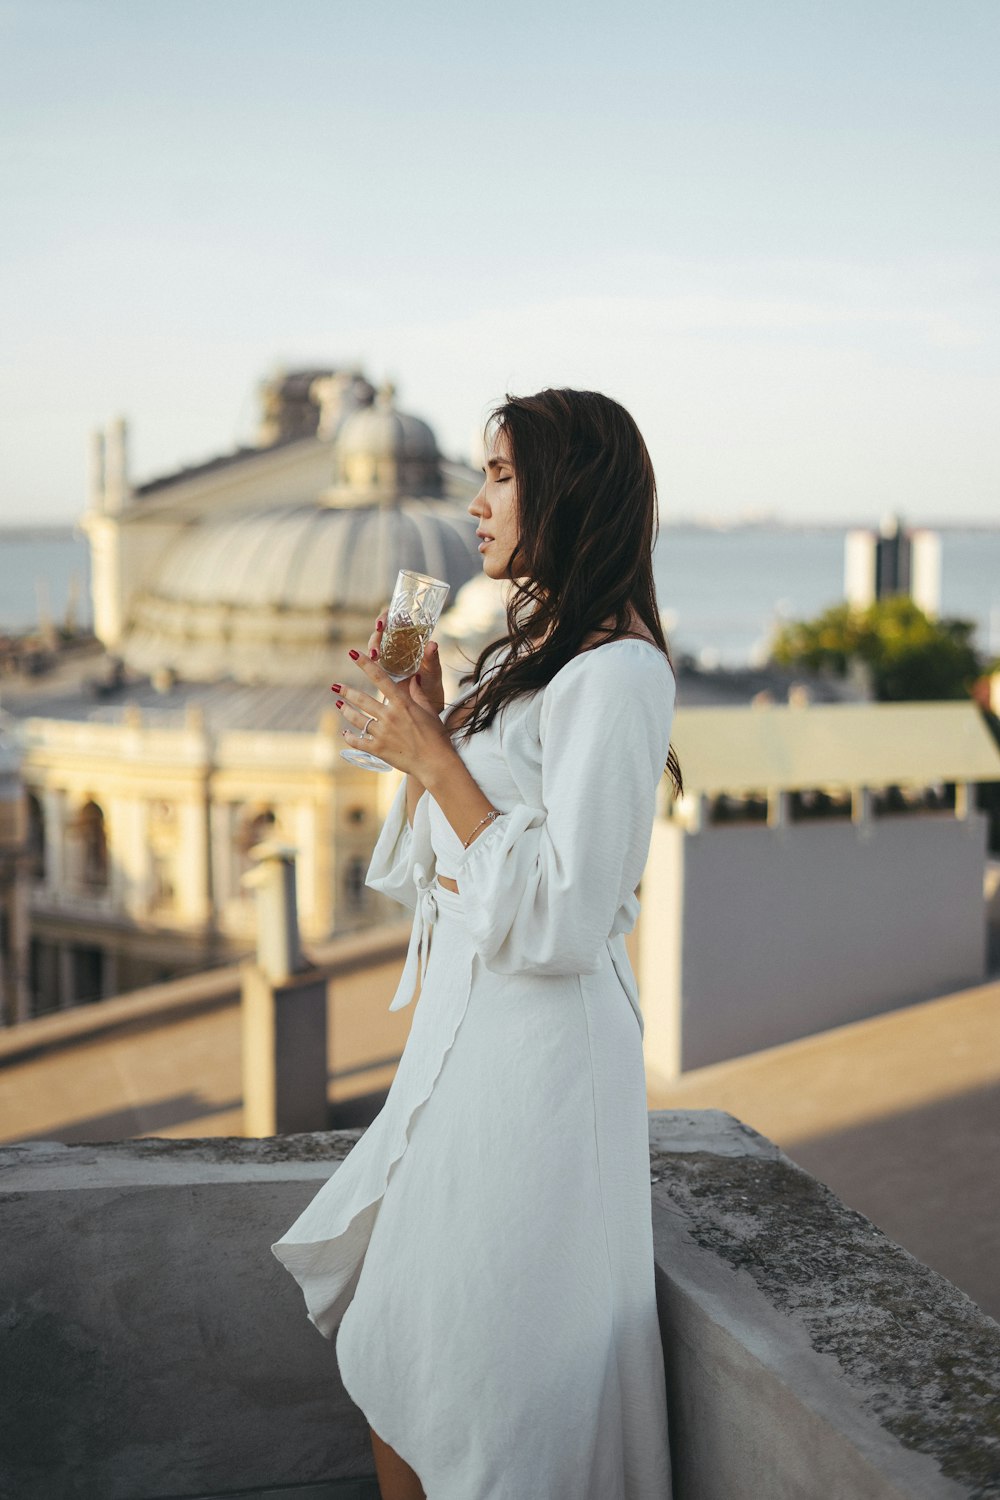 Una mujer con un vestido blanco sosteniendo una copa de vino